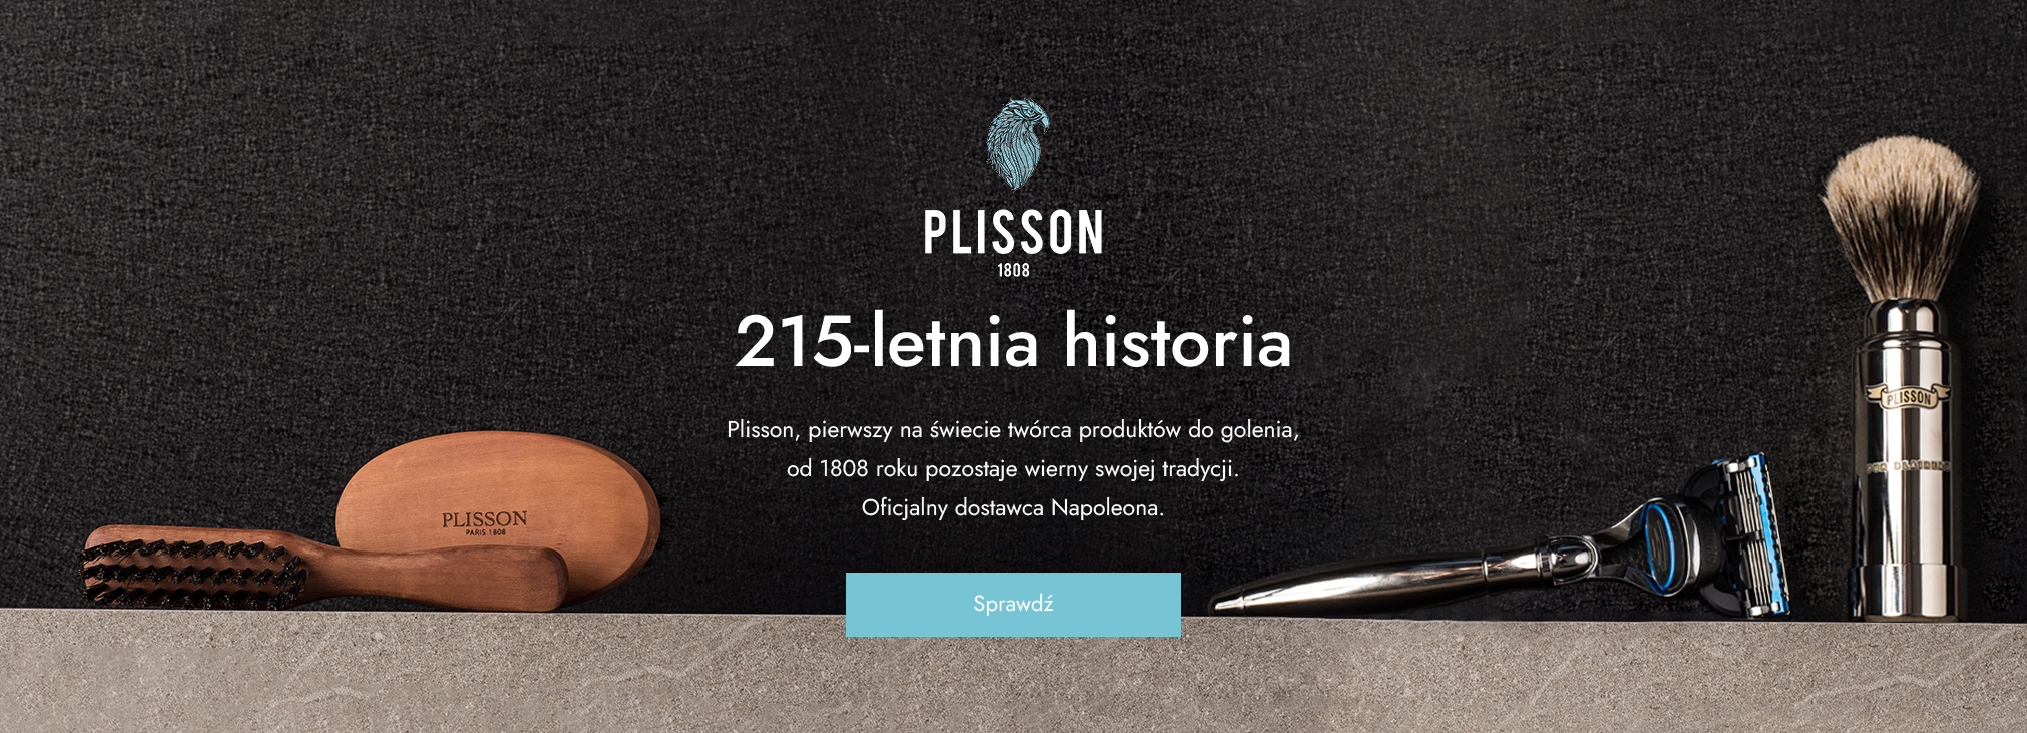 Plisson_men